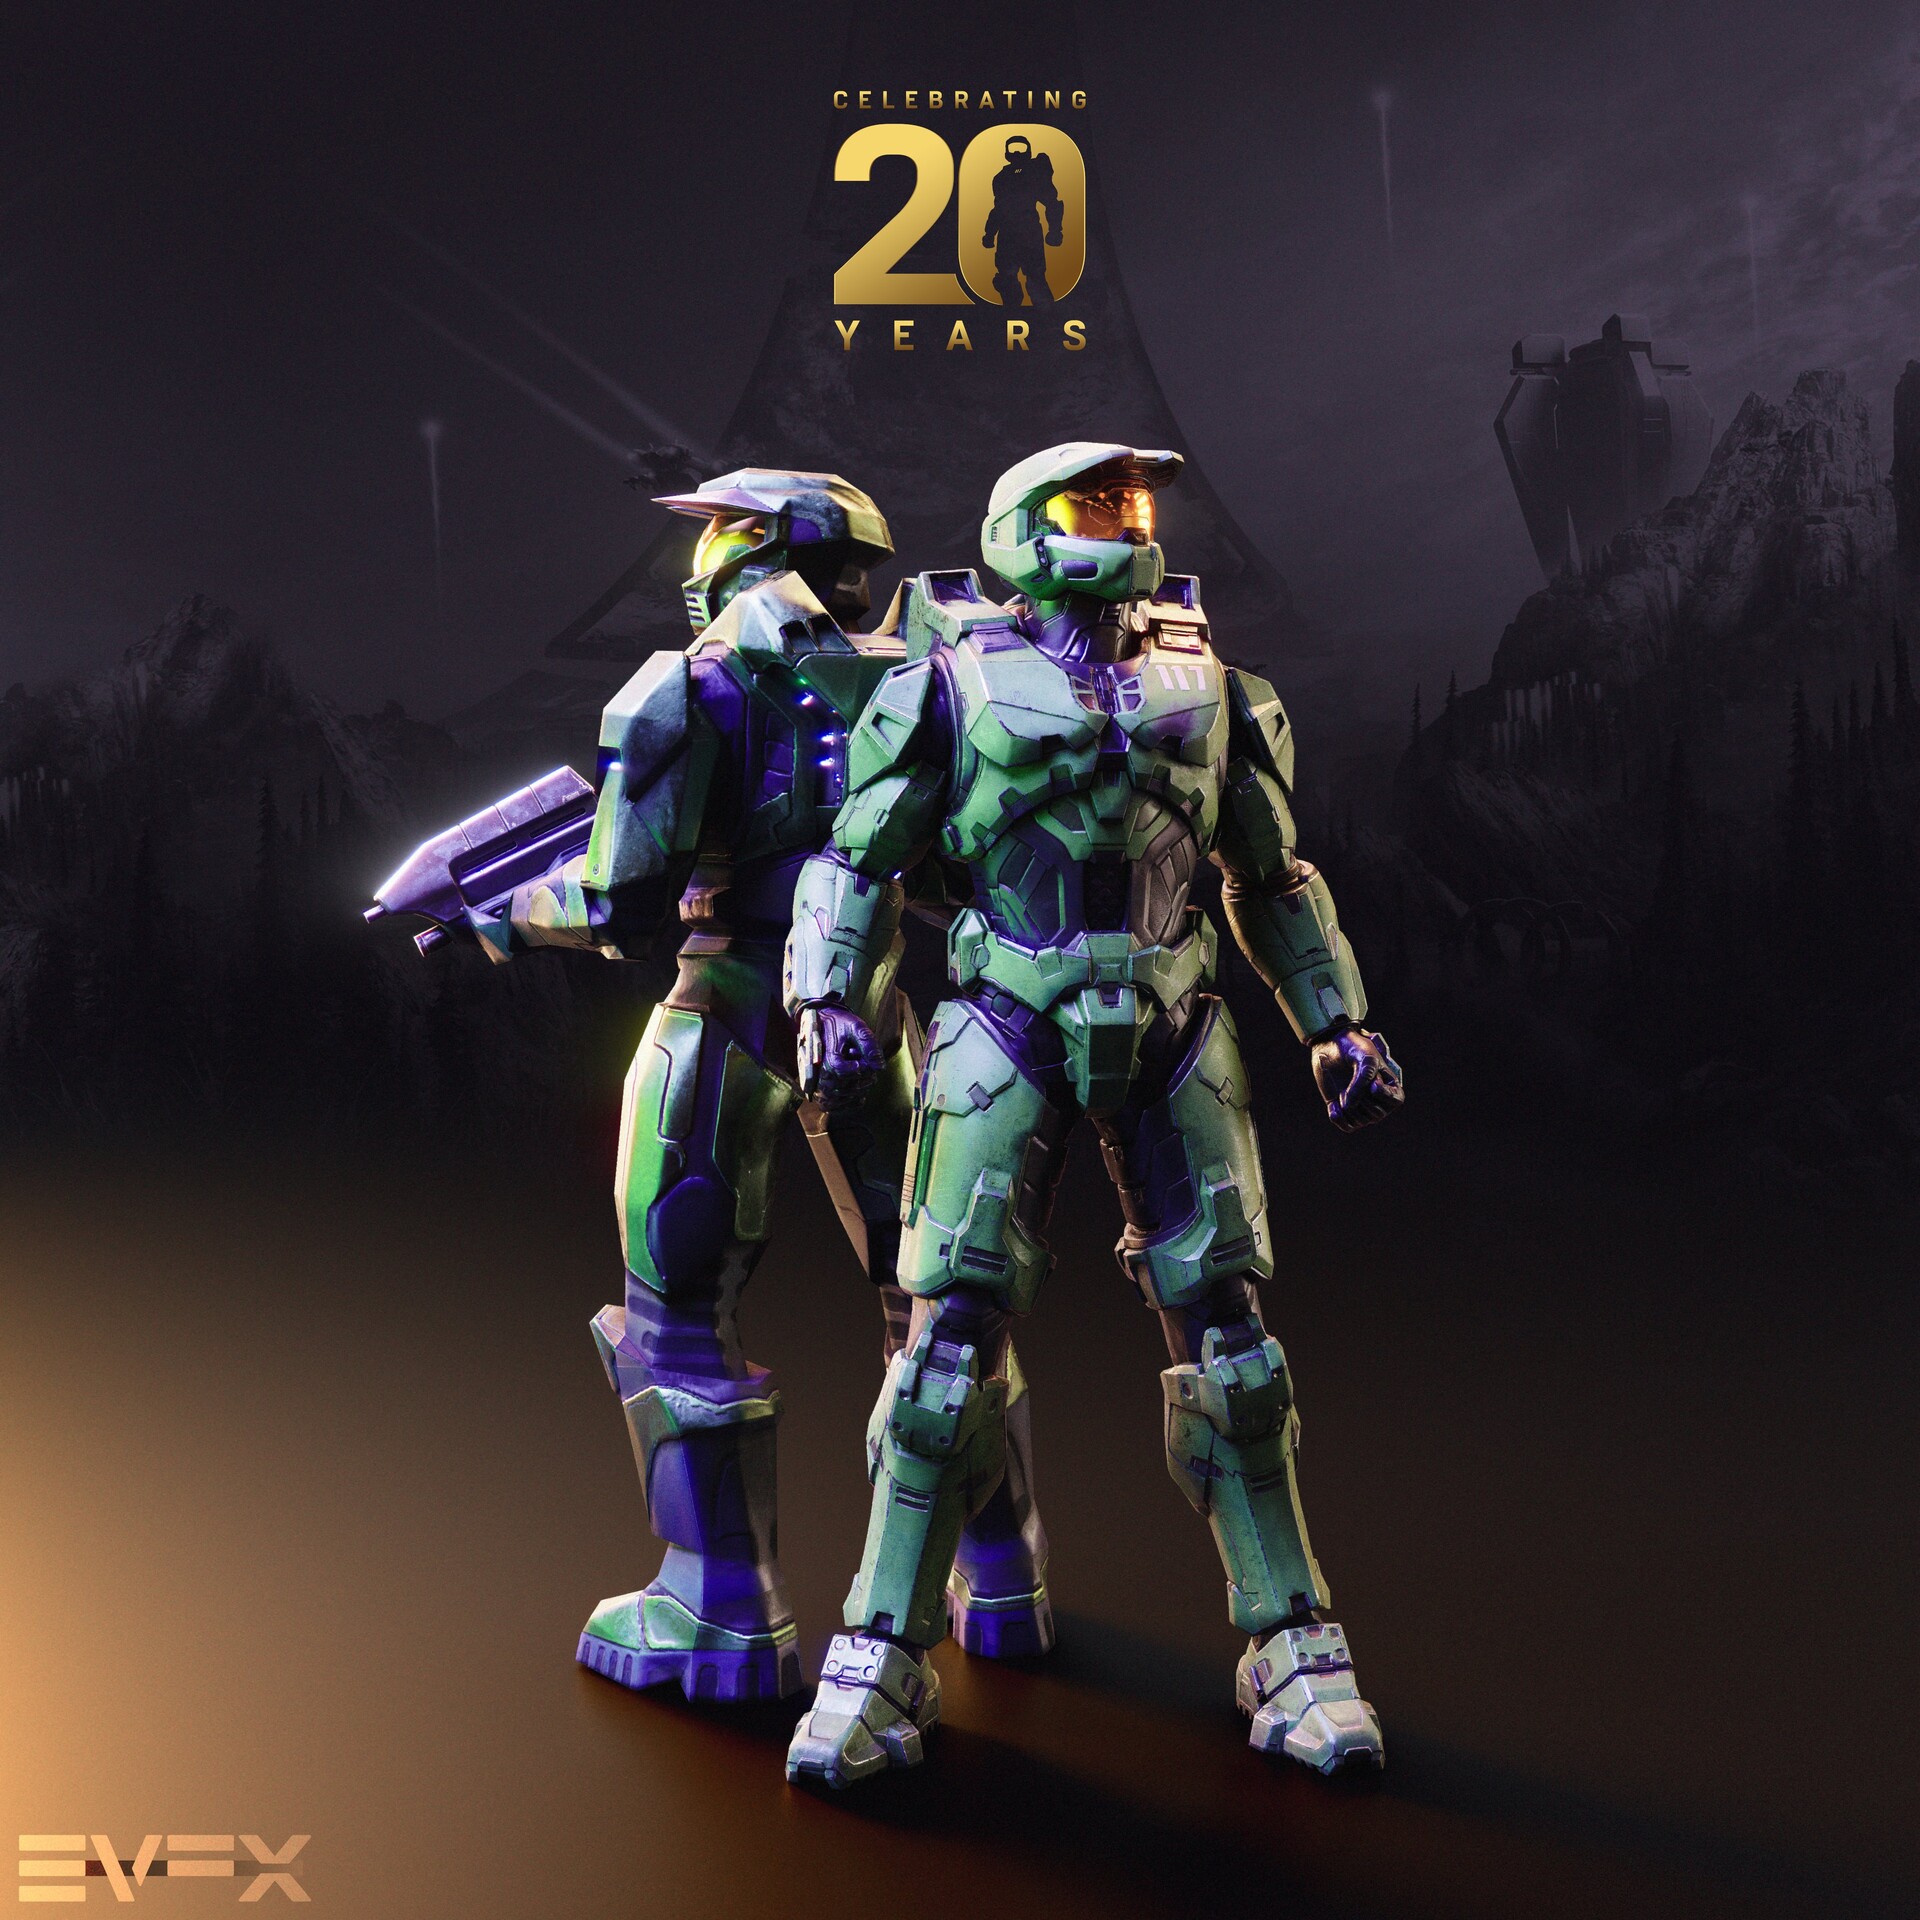 Celebrating 20 Years of Halo